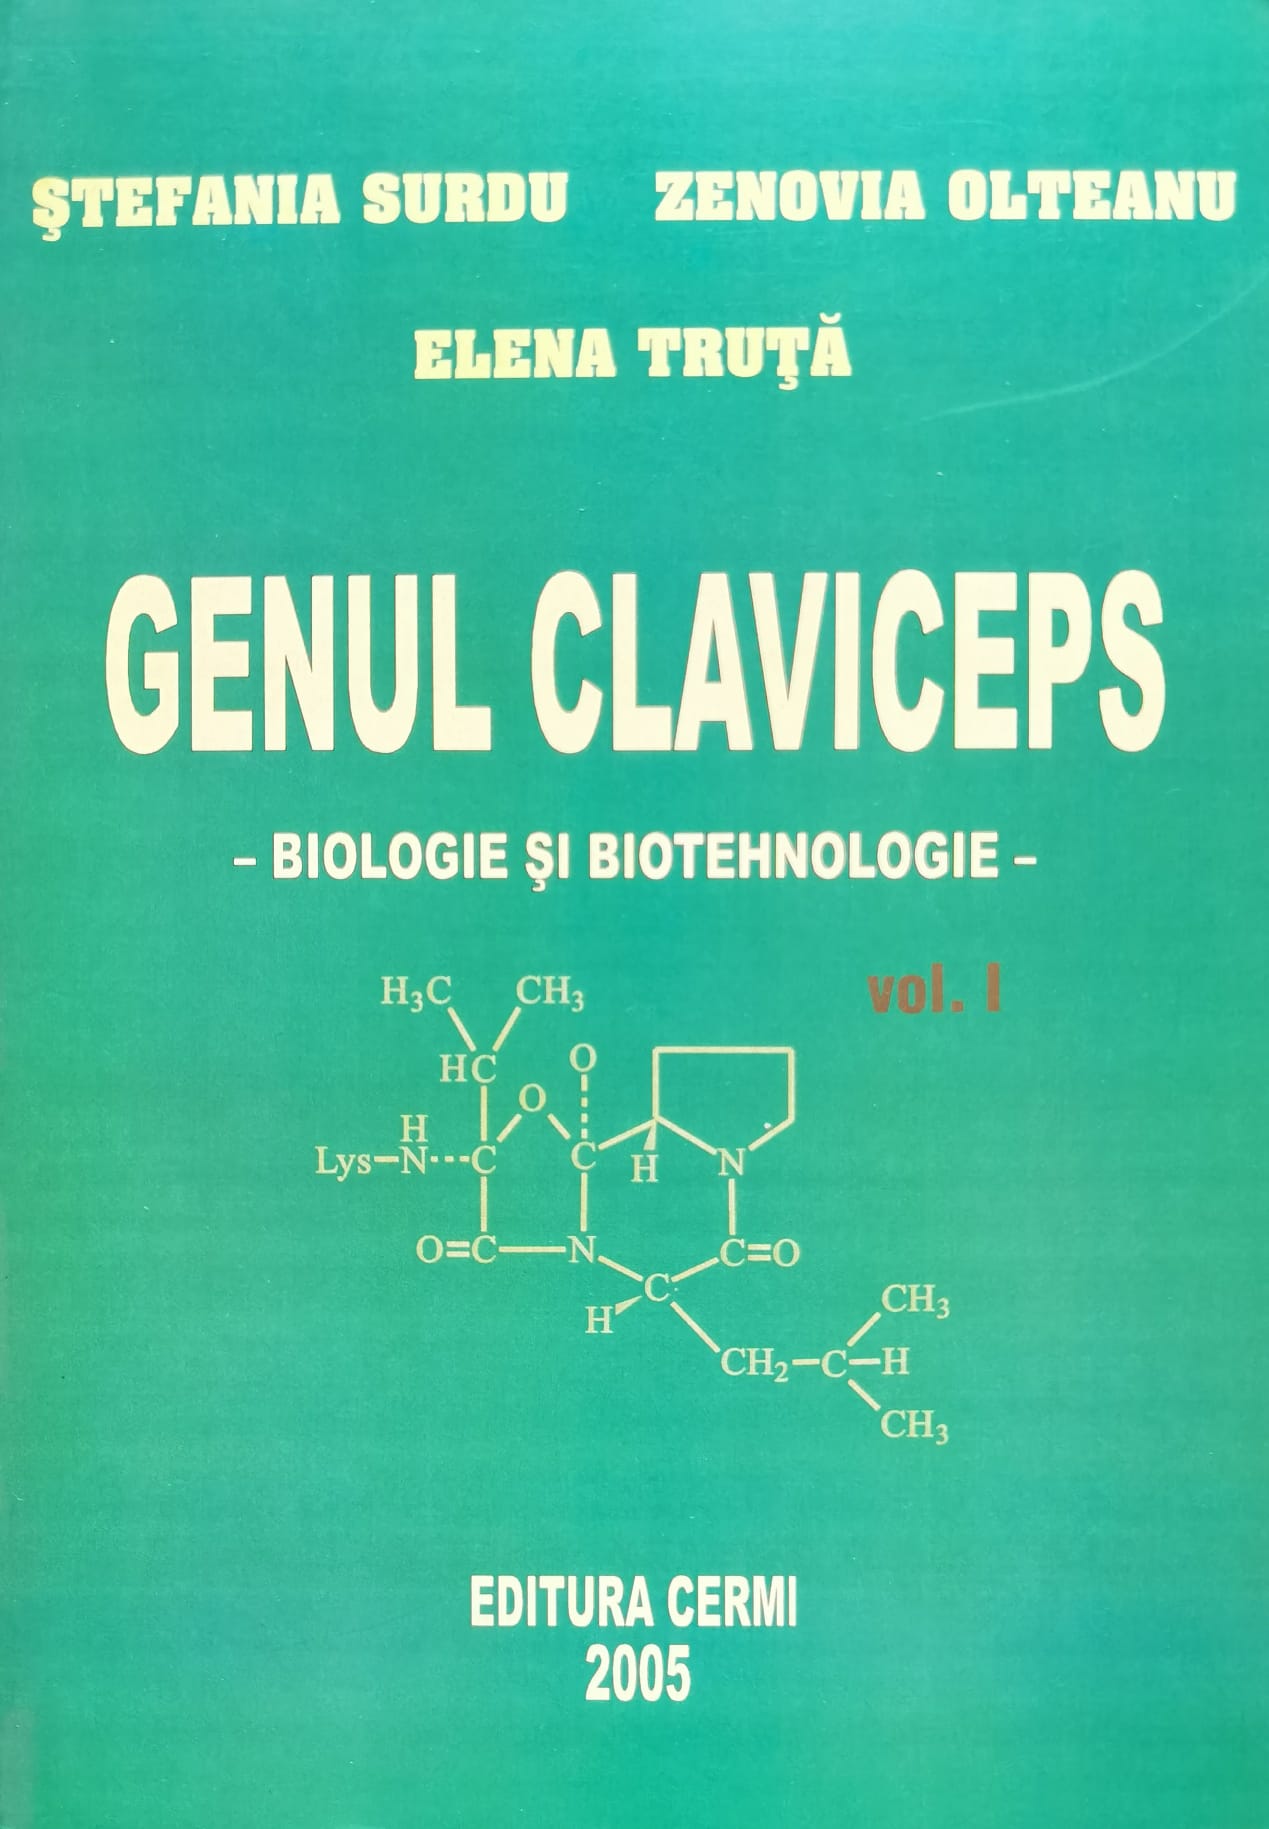 genul claviceps   biologie si biotehnologie vol. 1                                                   stefania surdu                                                                                      